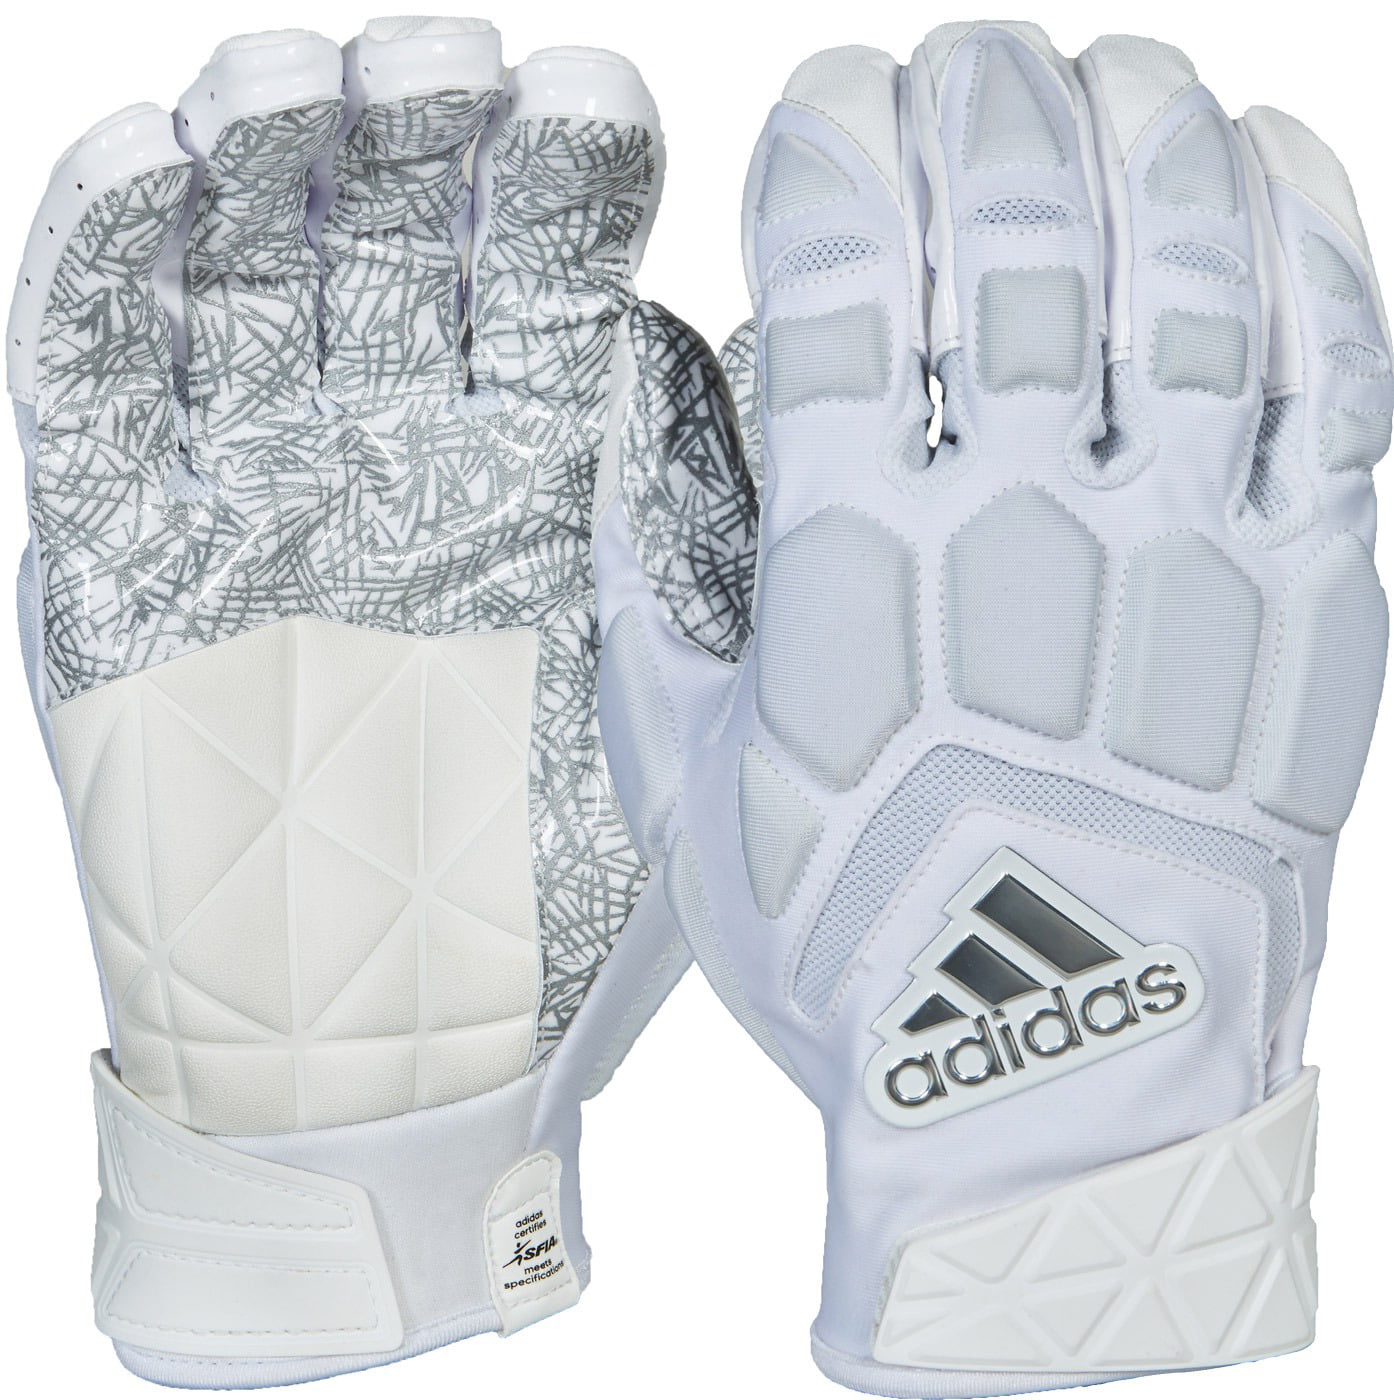 adidas freak max lineman gloves white